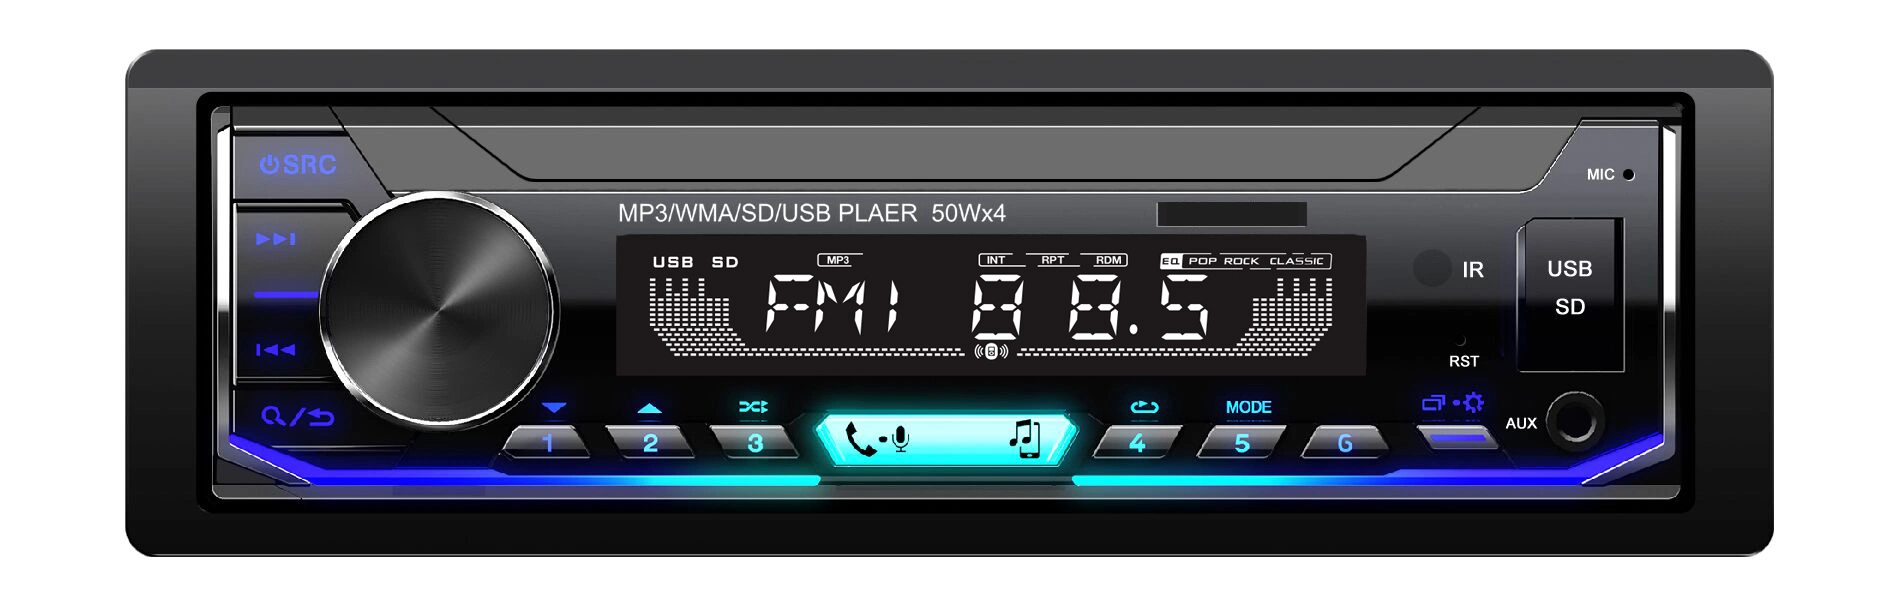 Car FM-радио Bluetooth USB мультимедиа аудио проигрывателя MP3